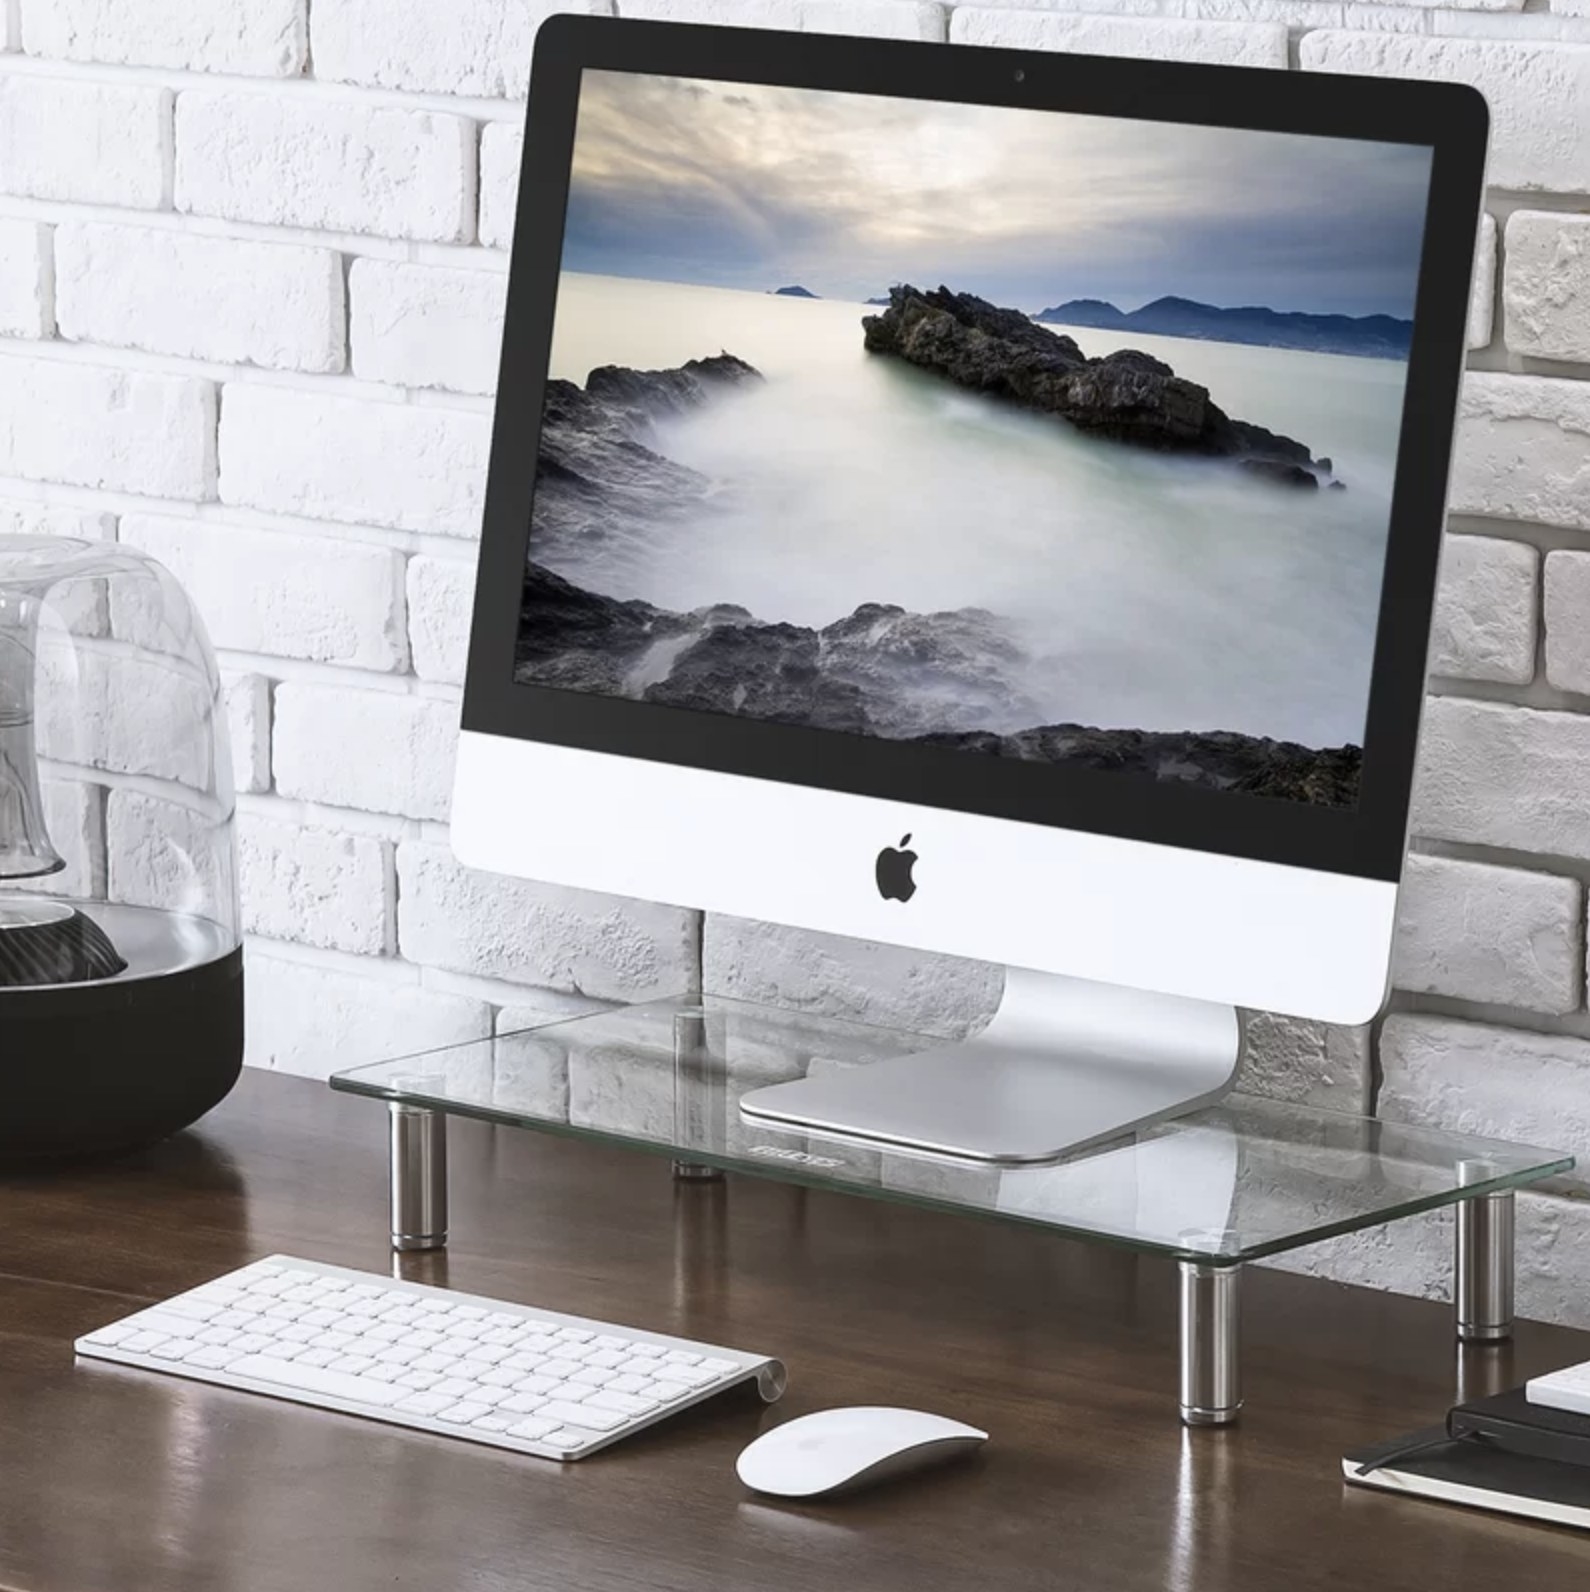 桌面站在iMac